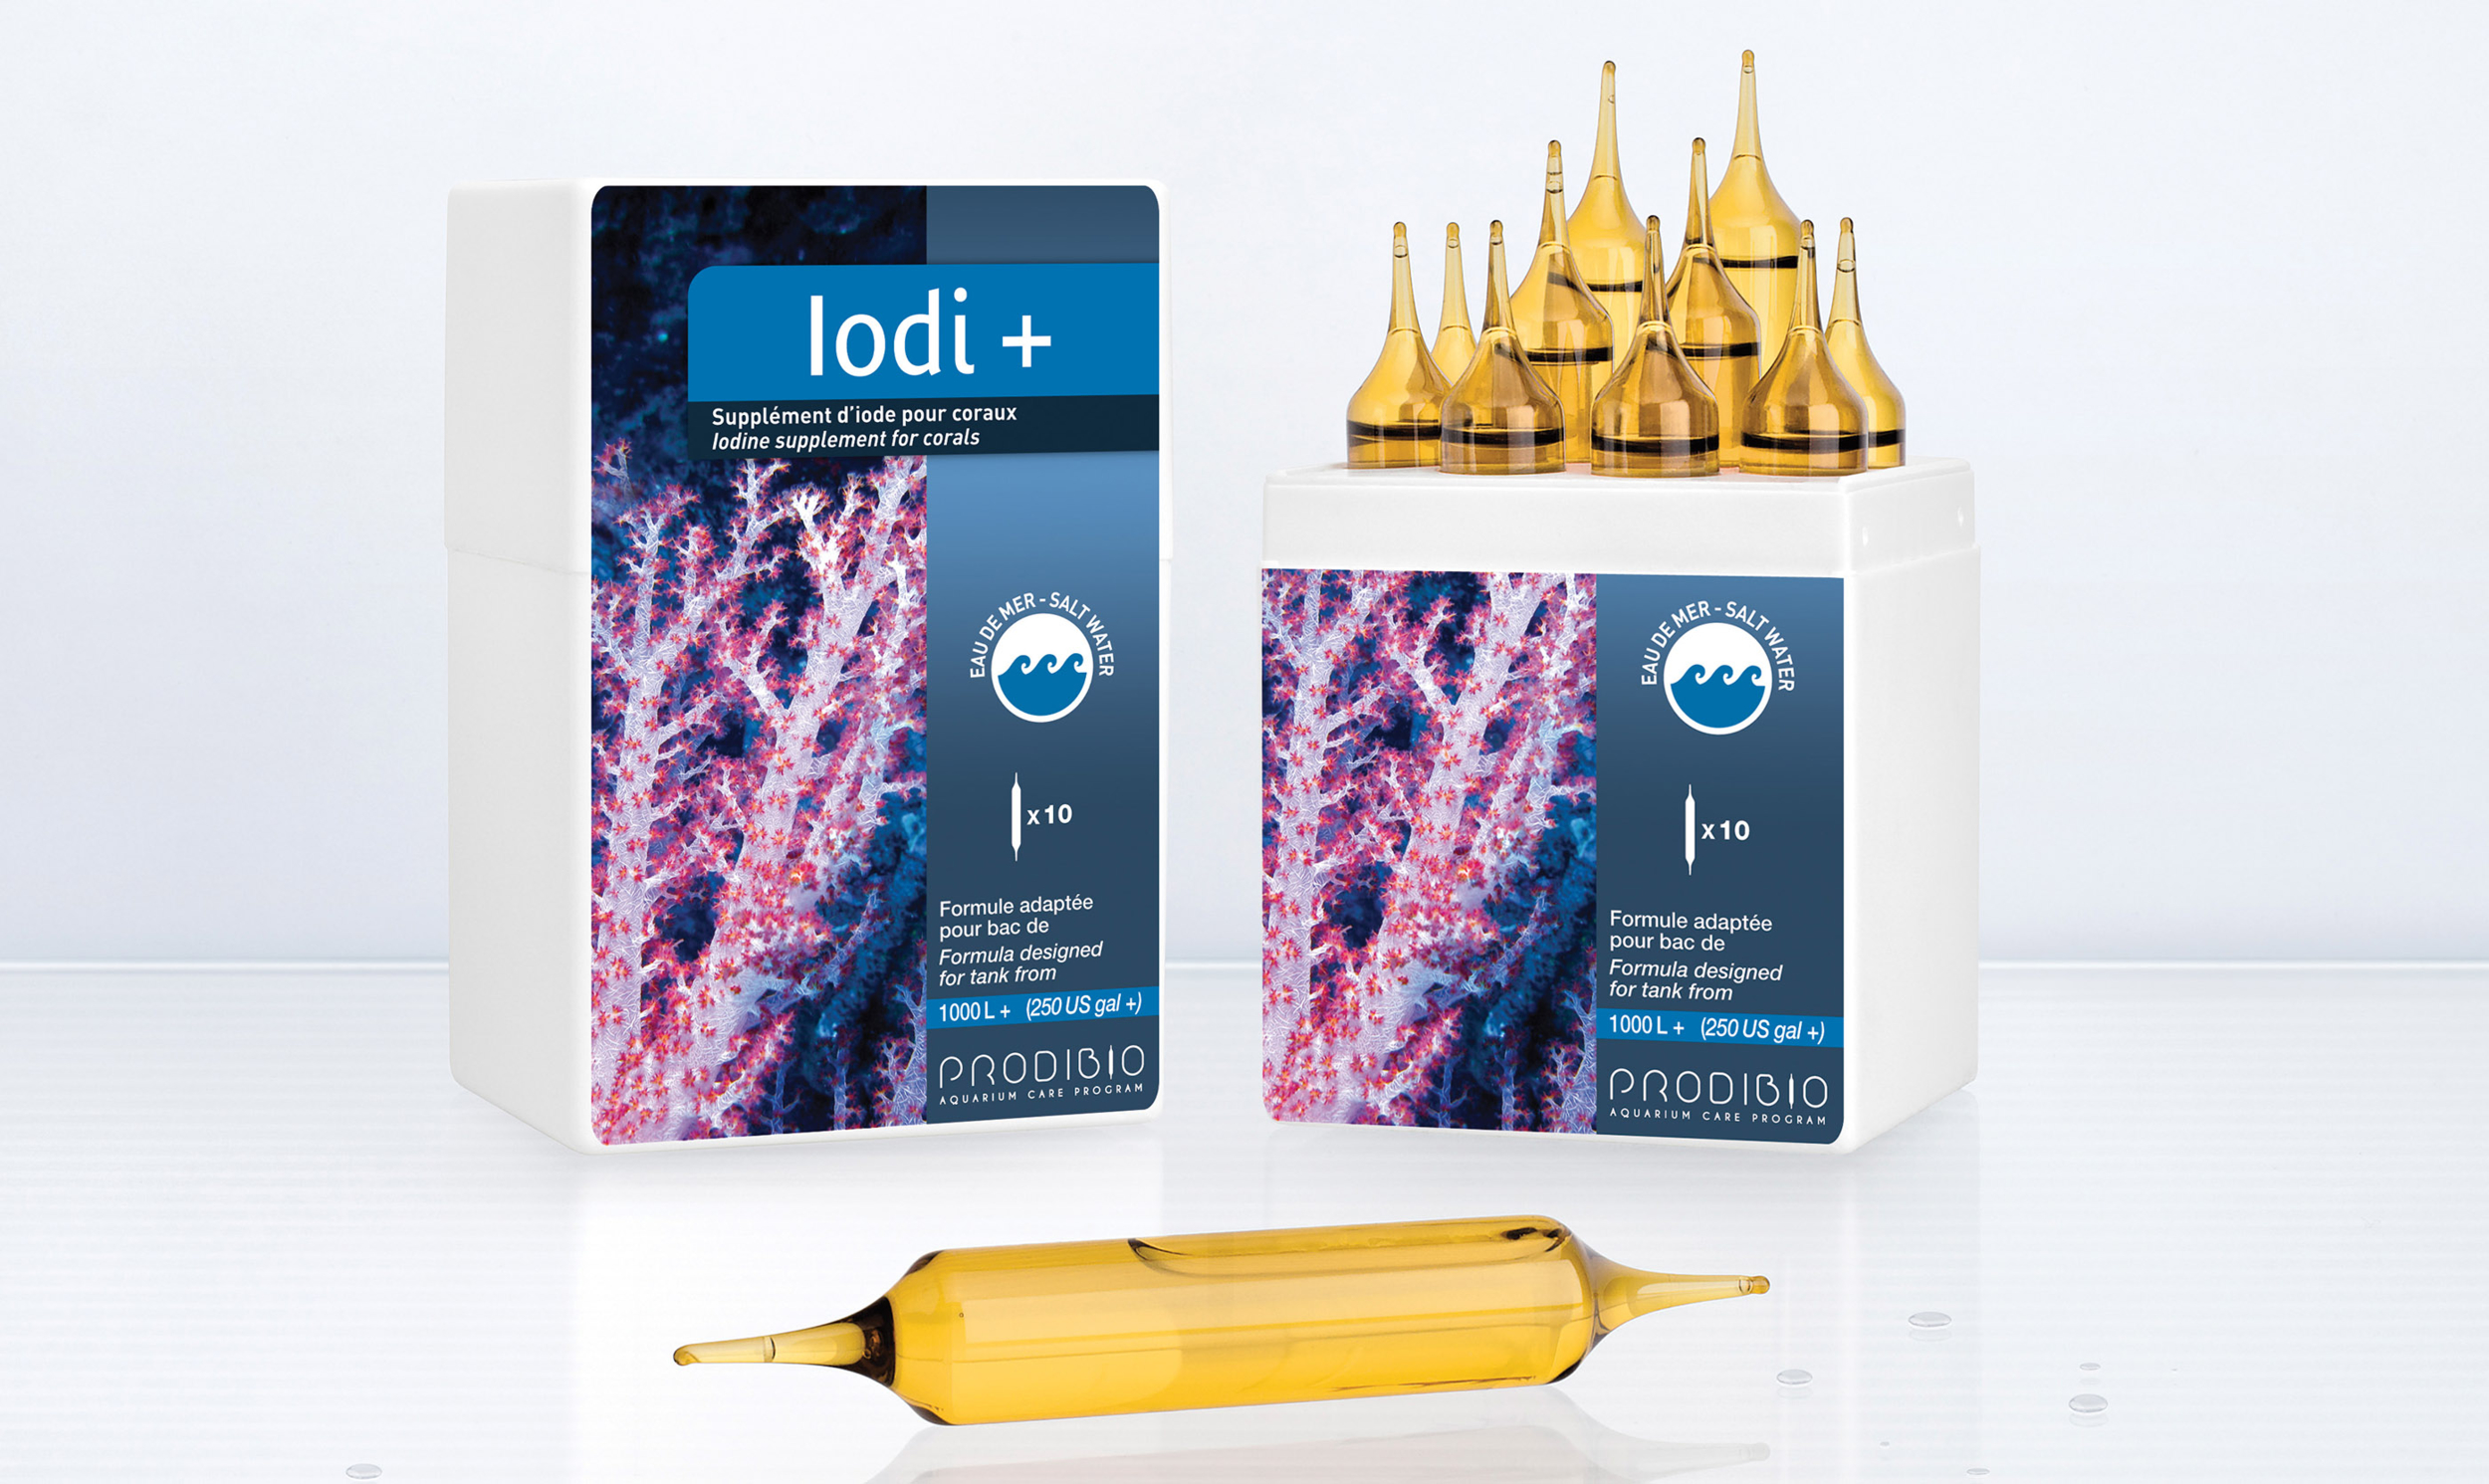 PRODIBIO Iodi + Pro 10 ampoules x 10ml supplément d\'iode pour aquarium récifal. Traite jusqu\'à 20000 L